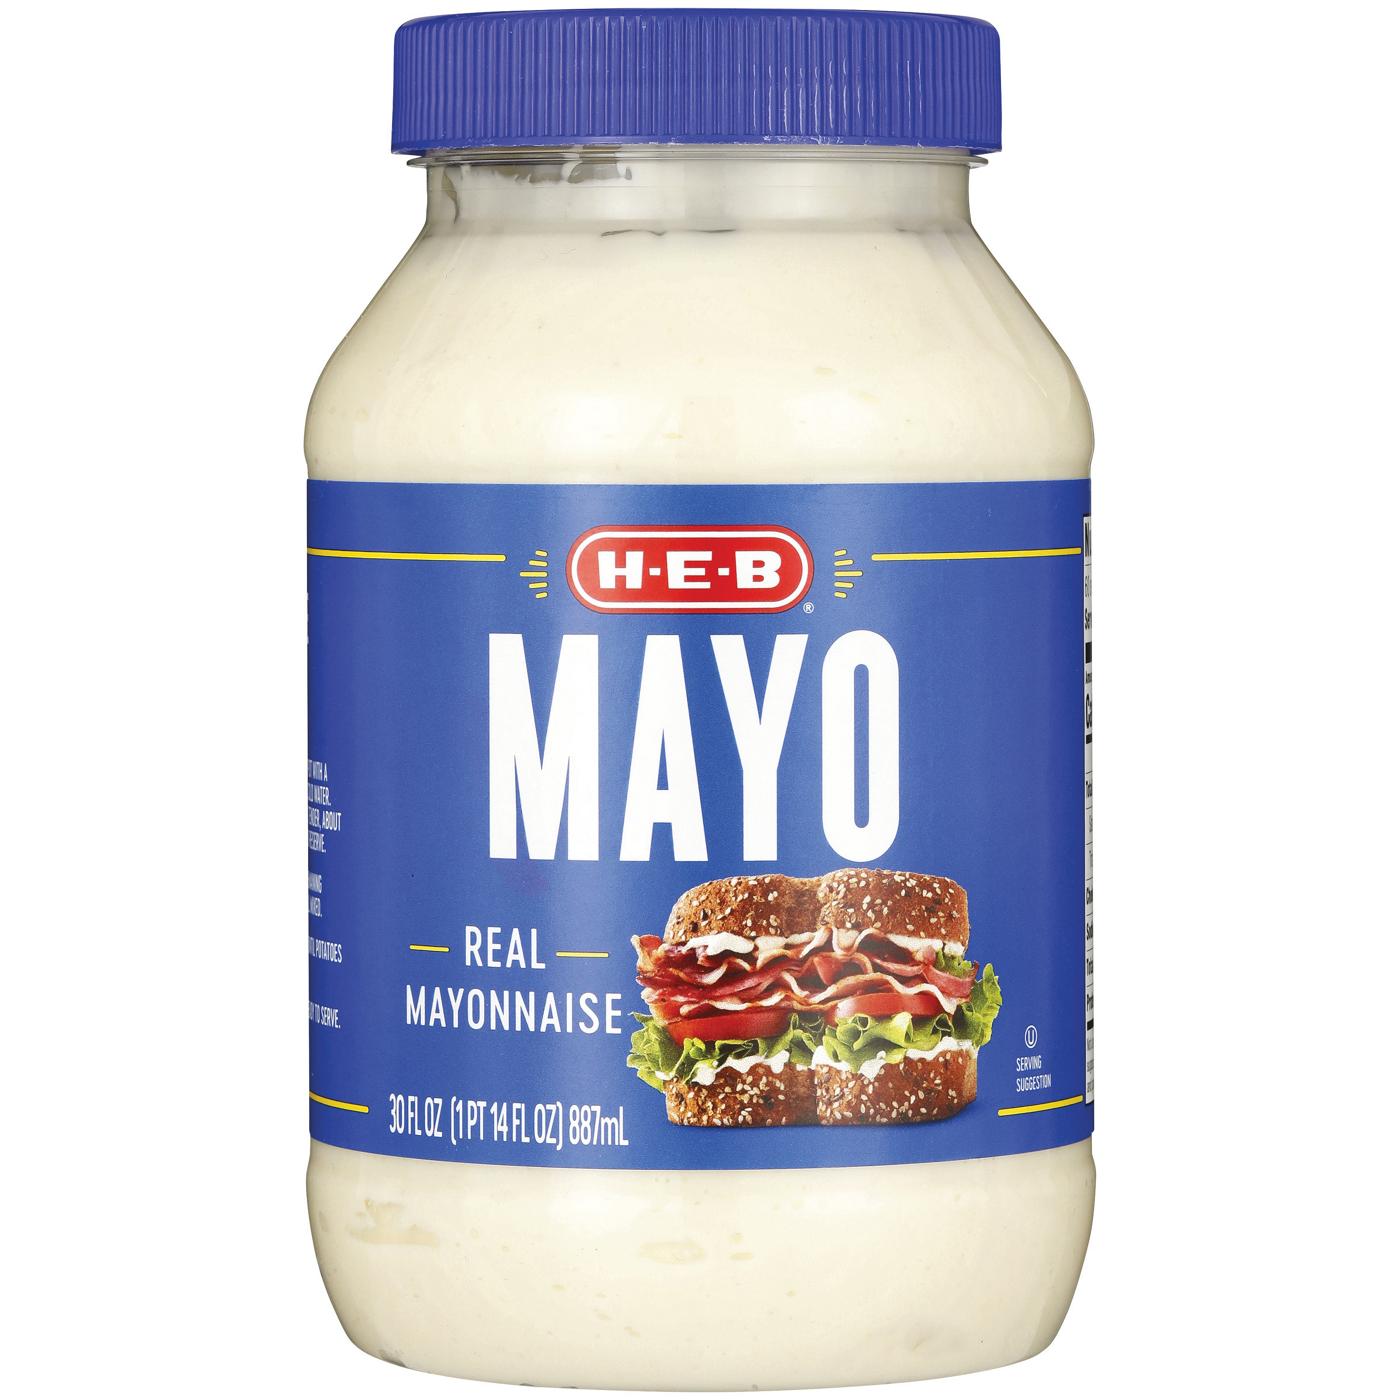 H-E-B Real Mayonnaise; image 1 of 2